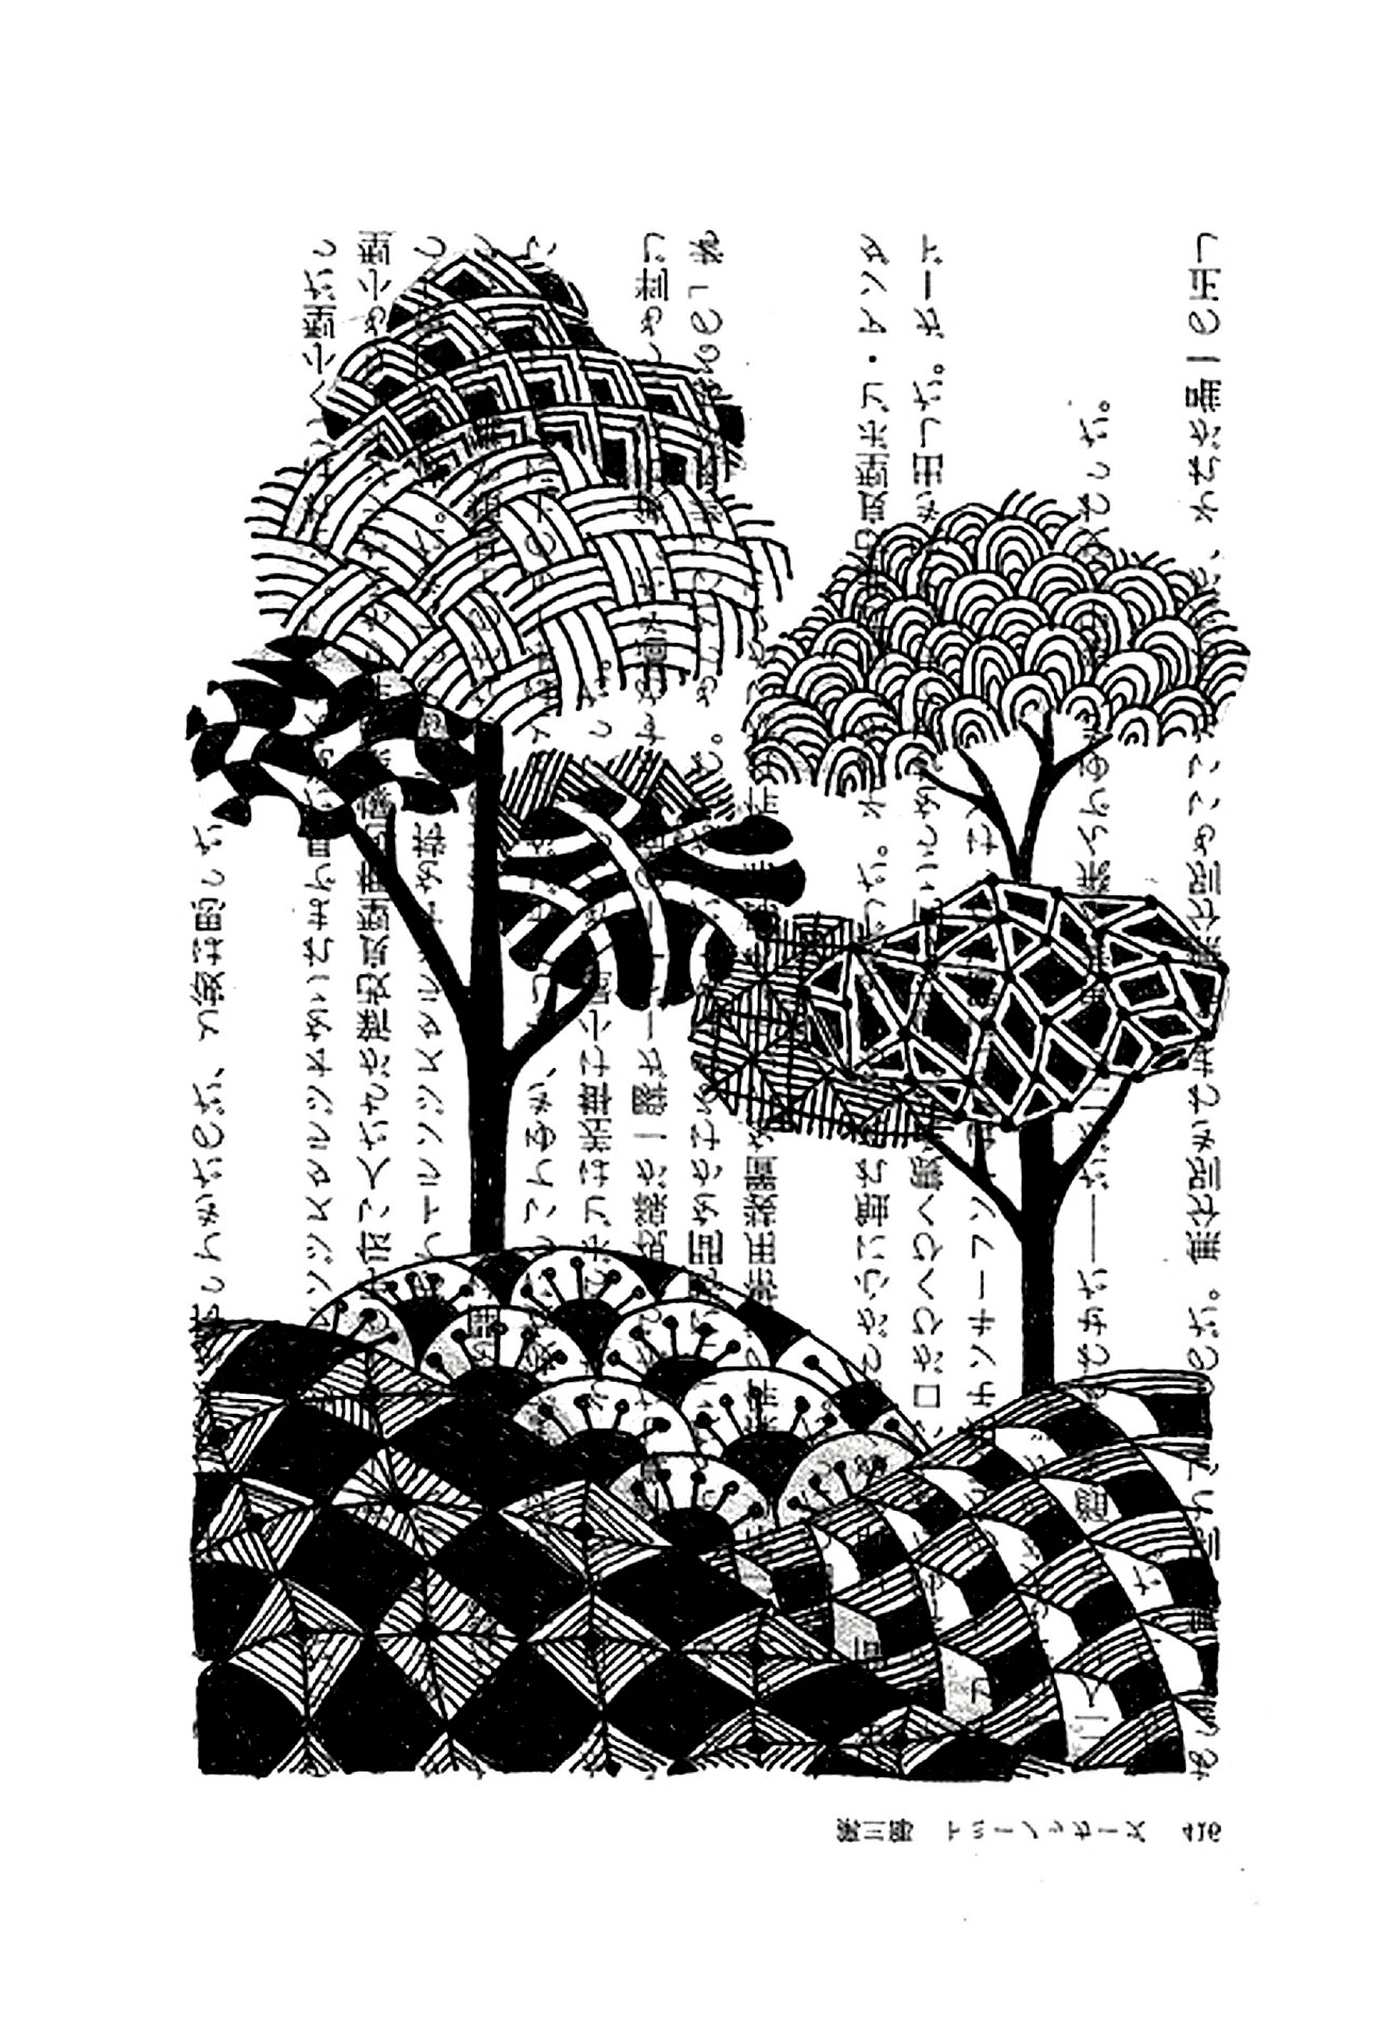   Des arbres avec des écritures japonaises 